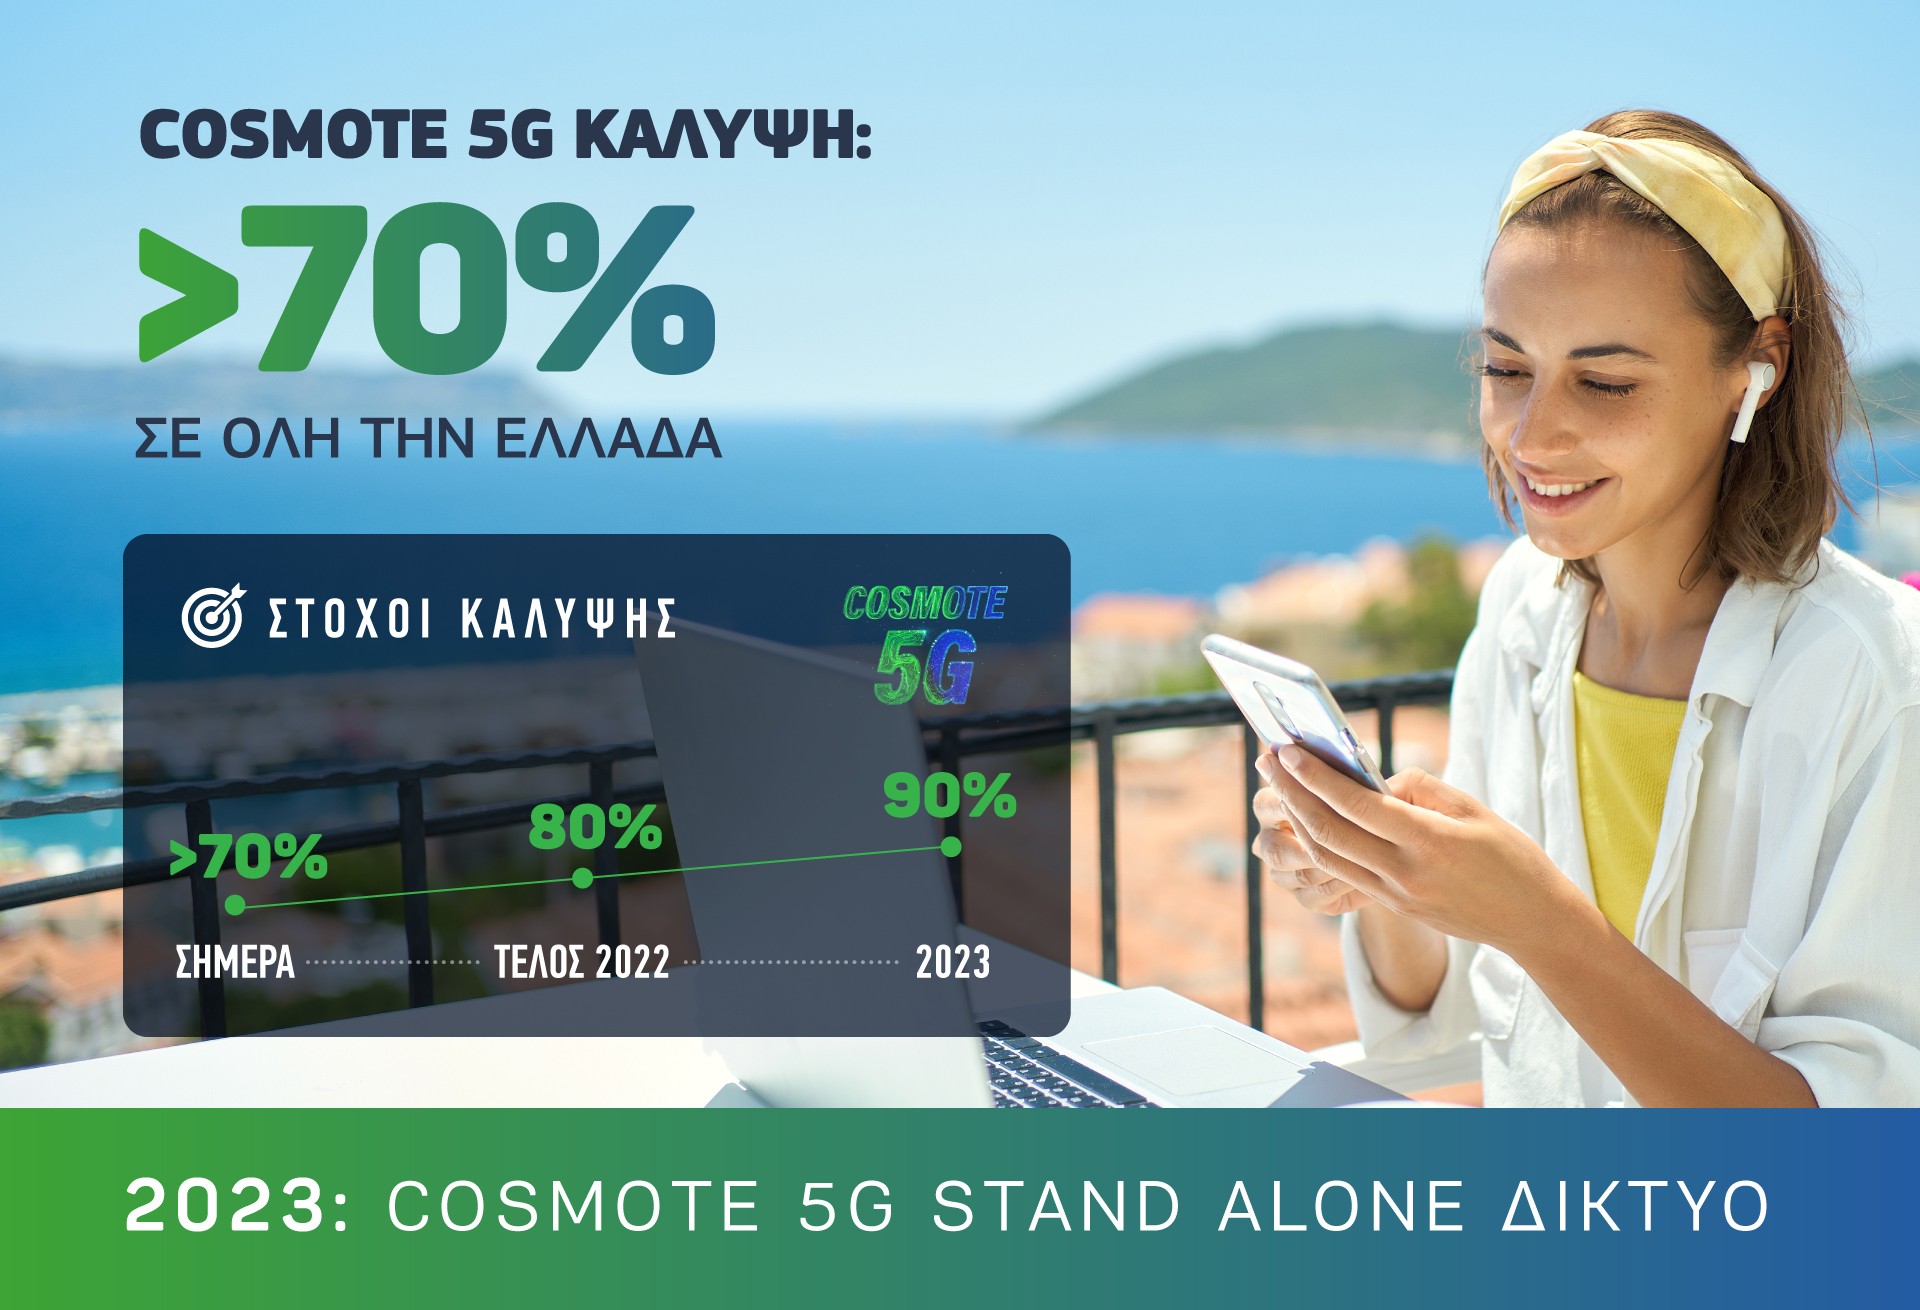 COSMOTE: Ξεπέρασε το 70% η 5G κάλυψη σε όλη την Ελλάδα | Ειδήσεις για την  Οικονομία | newmoney